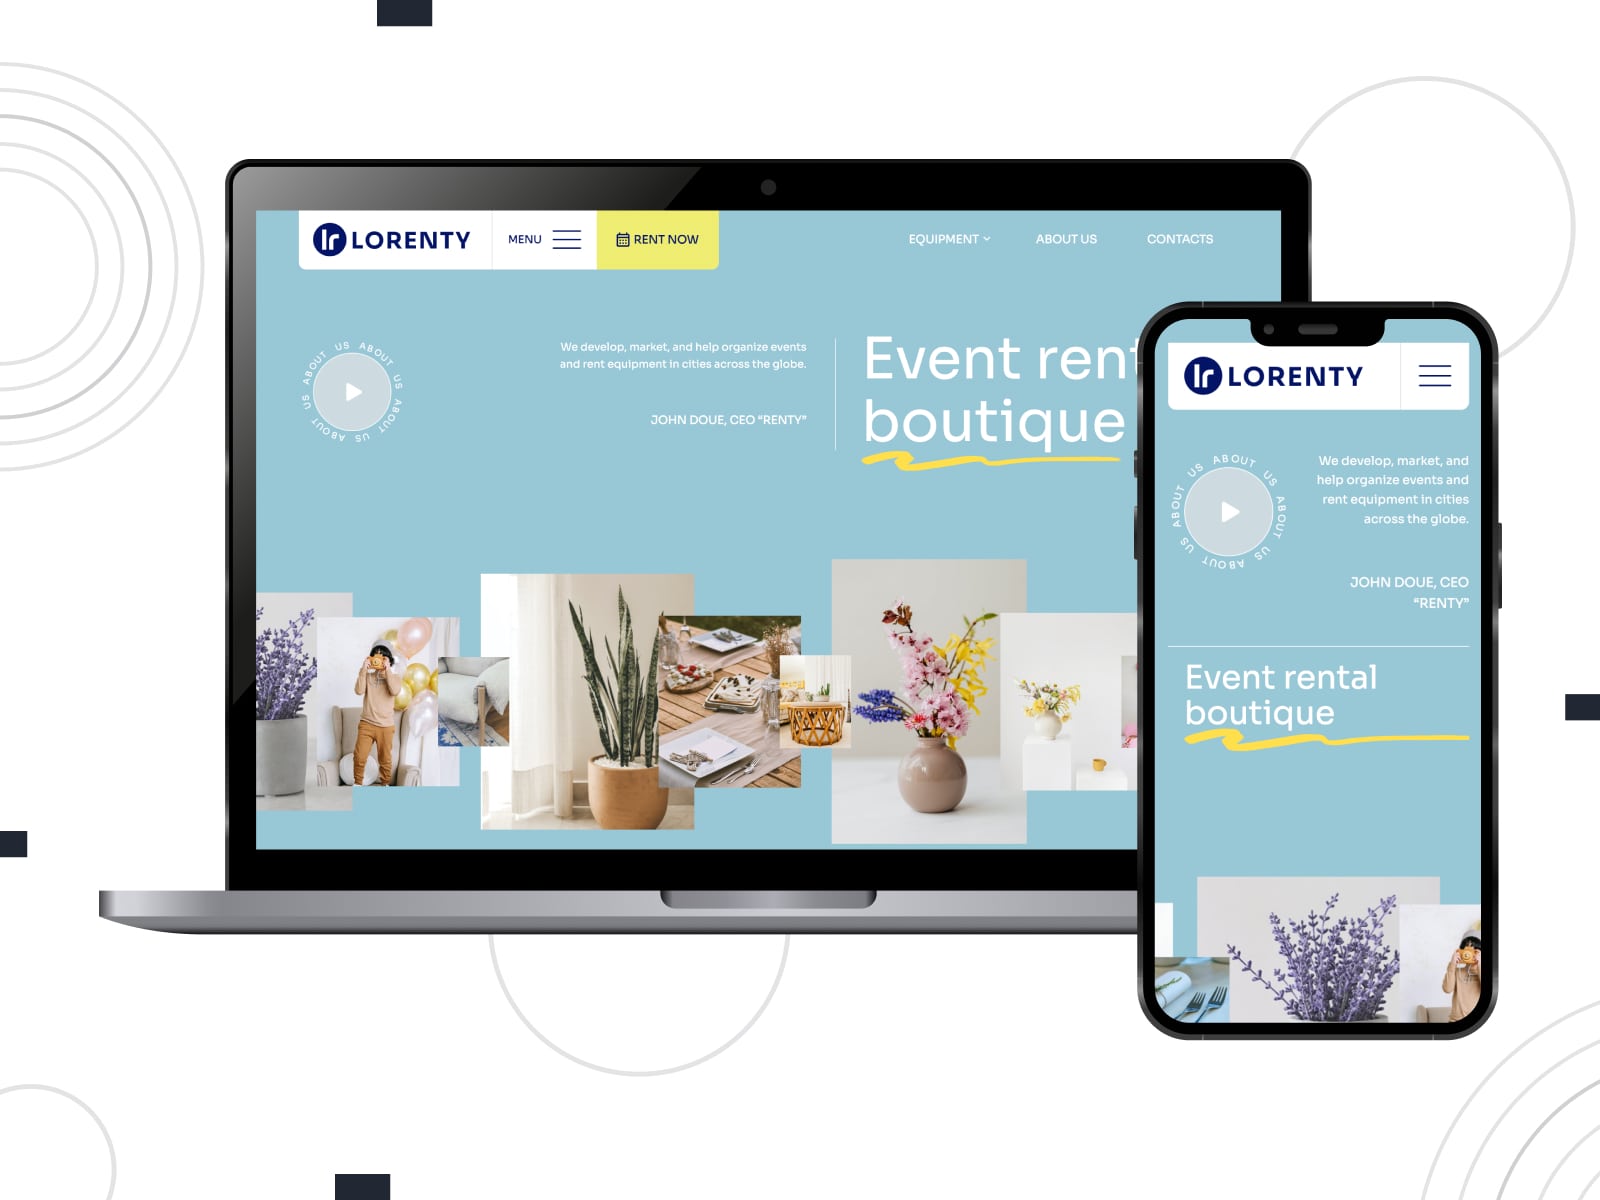 蓝色、黄色和灰色 WordPress 网站的 Lorenty 派对租赁网站模板的拼贴。